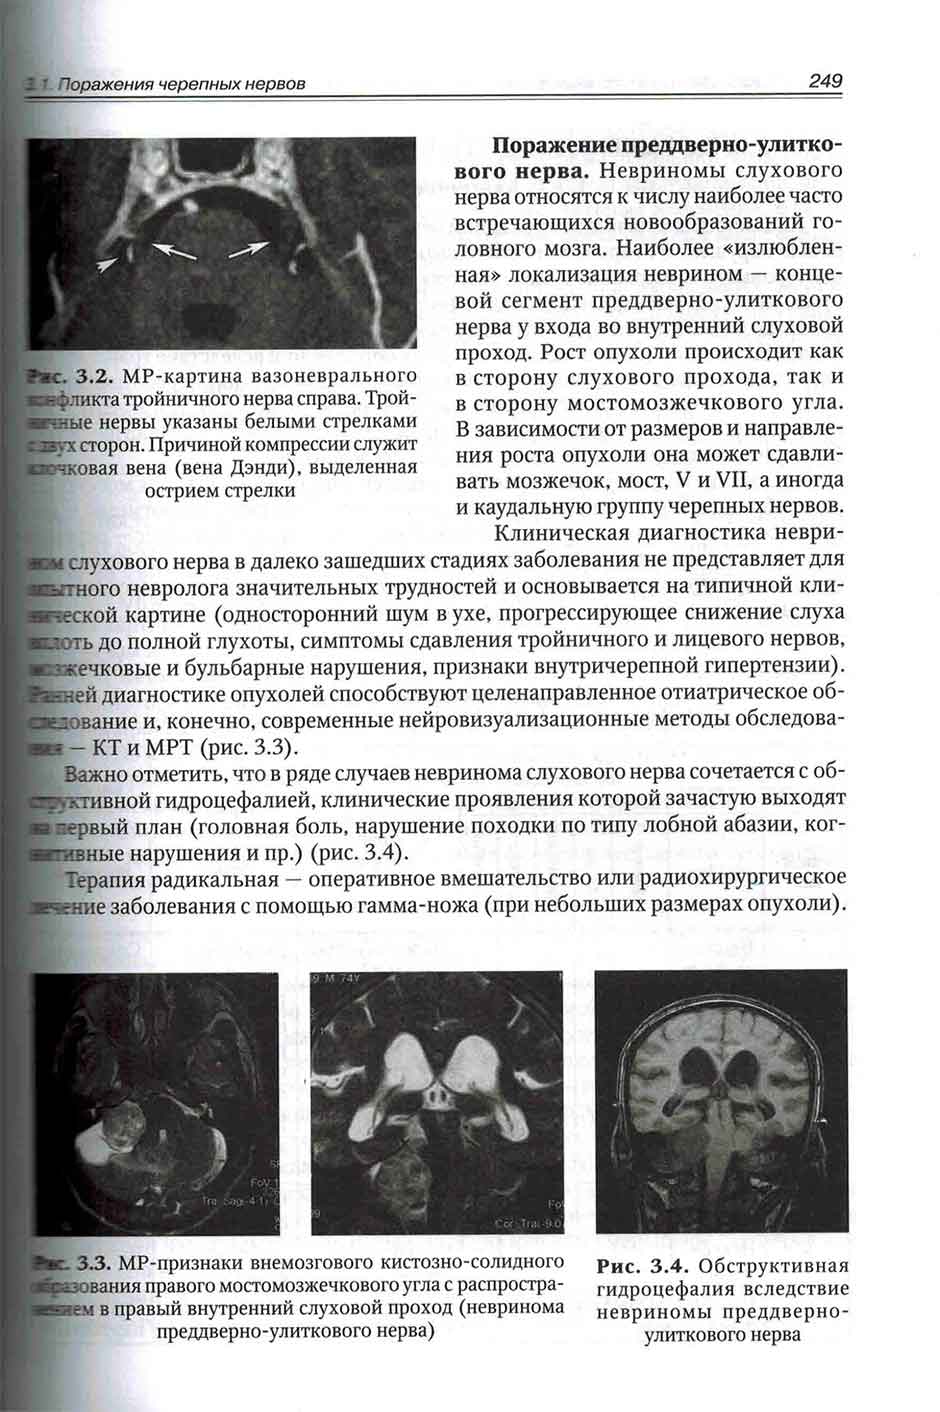 Рис. 3.4. Обструктивная гидроцефалия вследствие невриномы преддверно-улиткового нерва